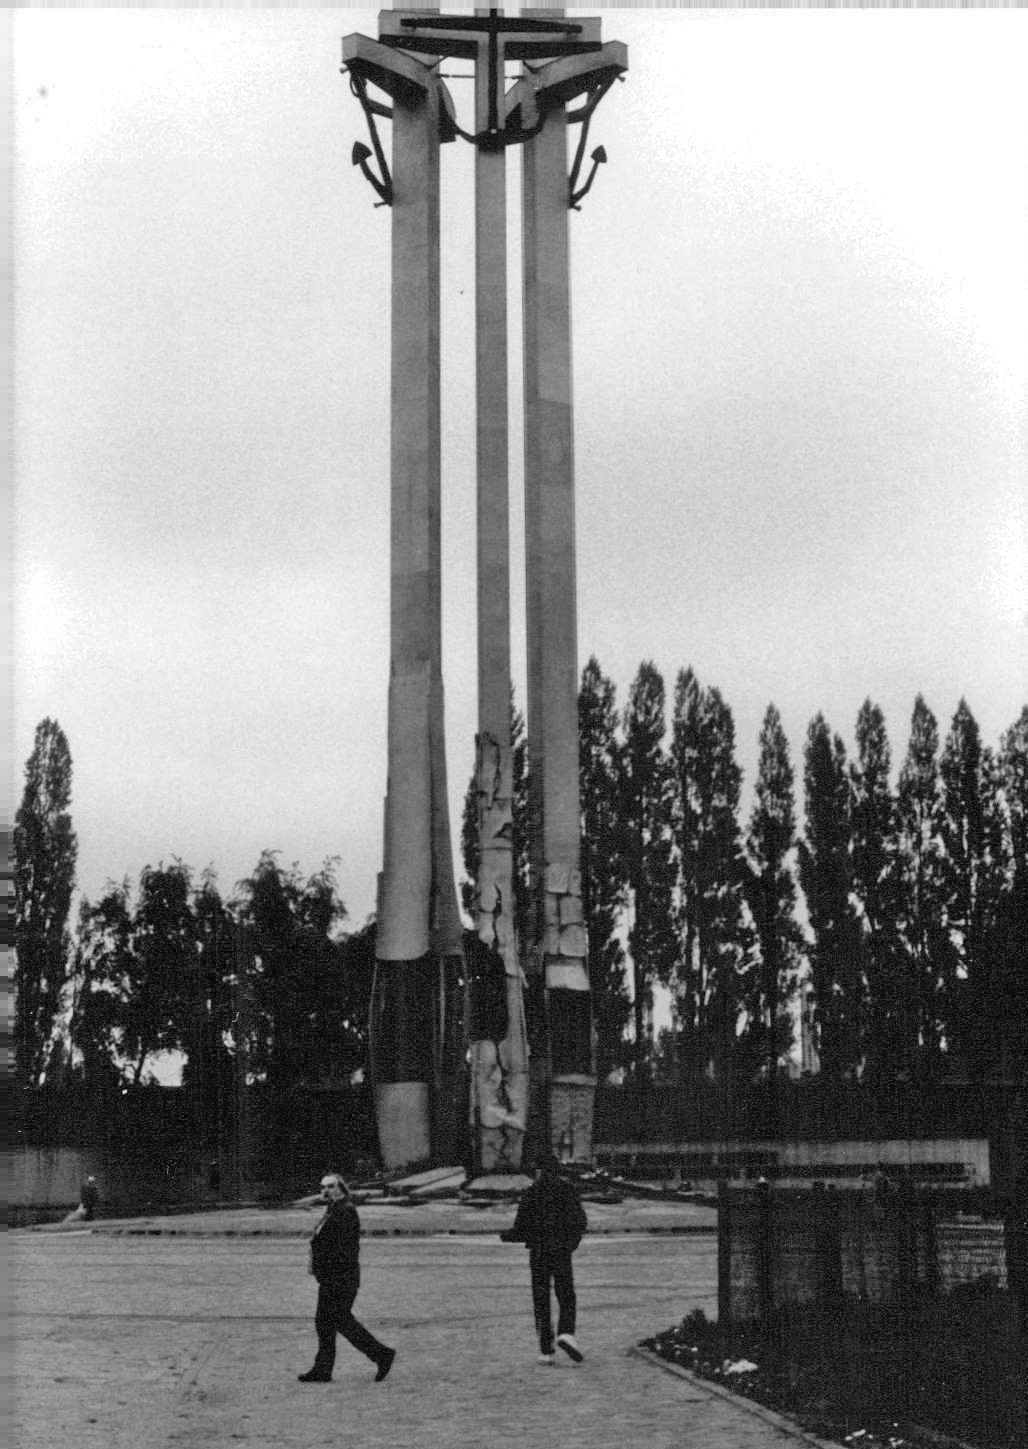 Gdańsk Shipyard Monument, 1990